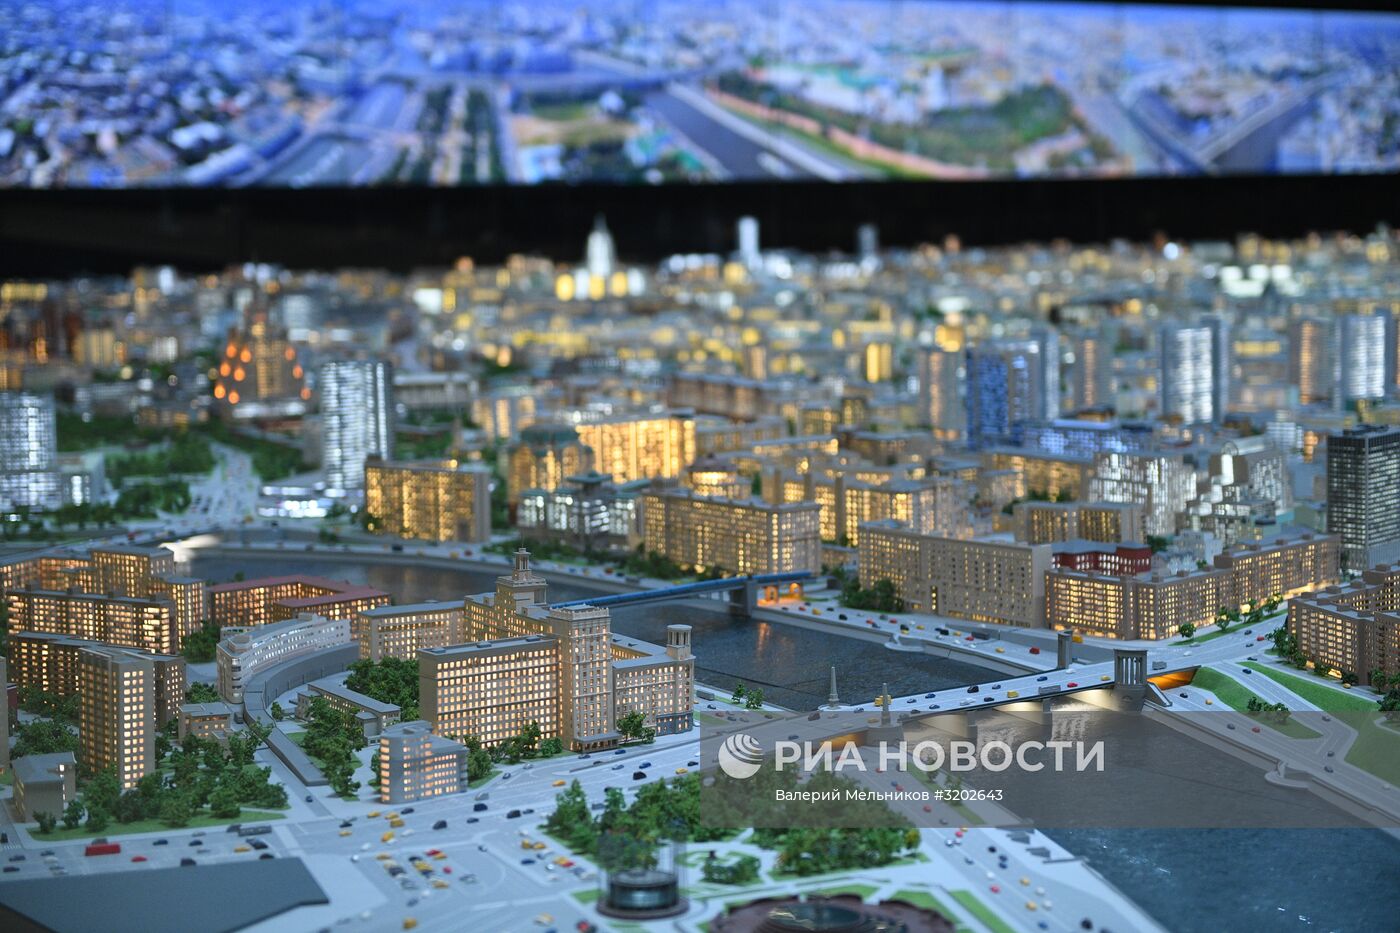 Макет Москвы представлен на ВДНХ